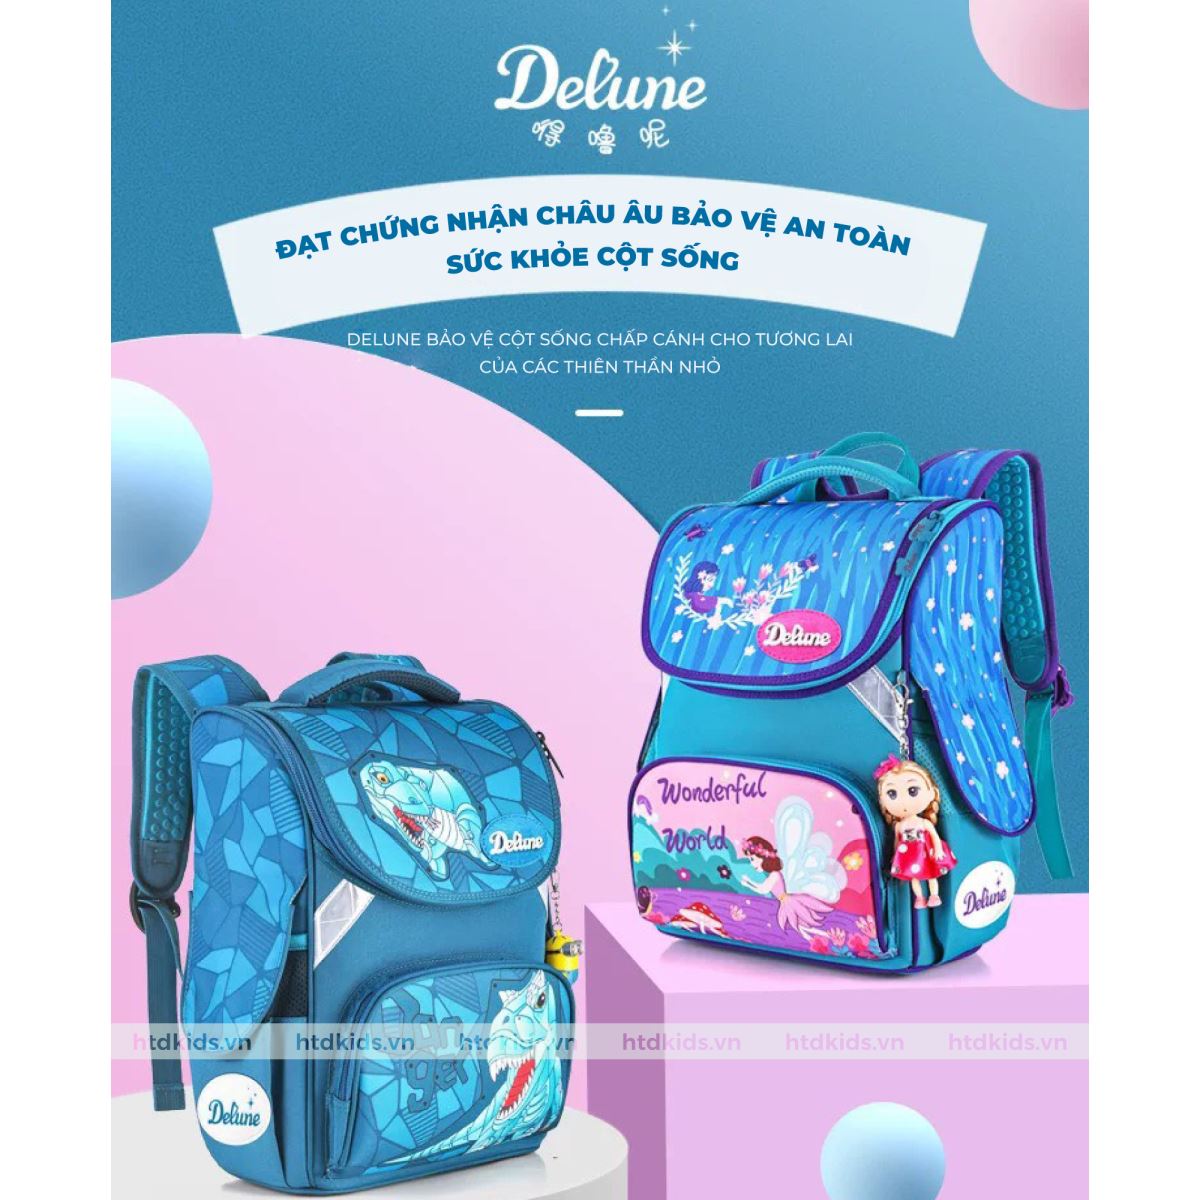 2 mẫu balo chống gù lưng thương hiệu Delune mẫu mới 2022